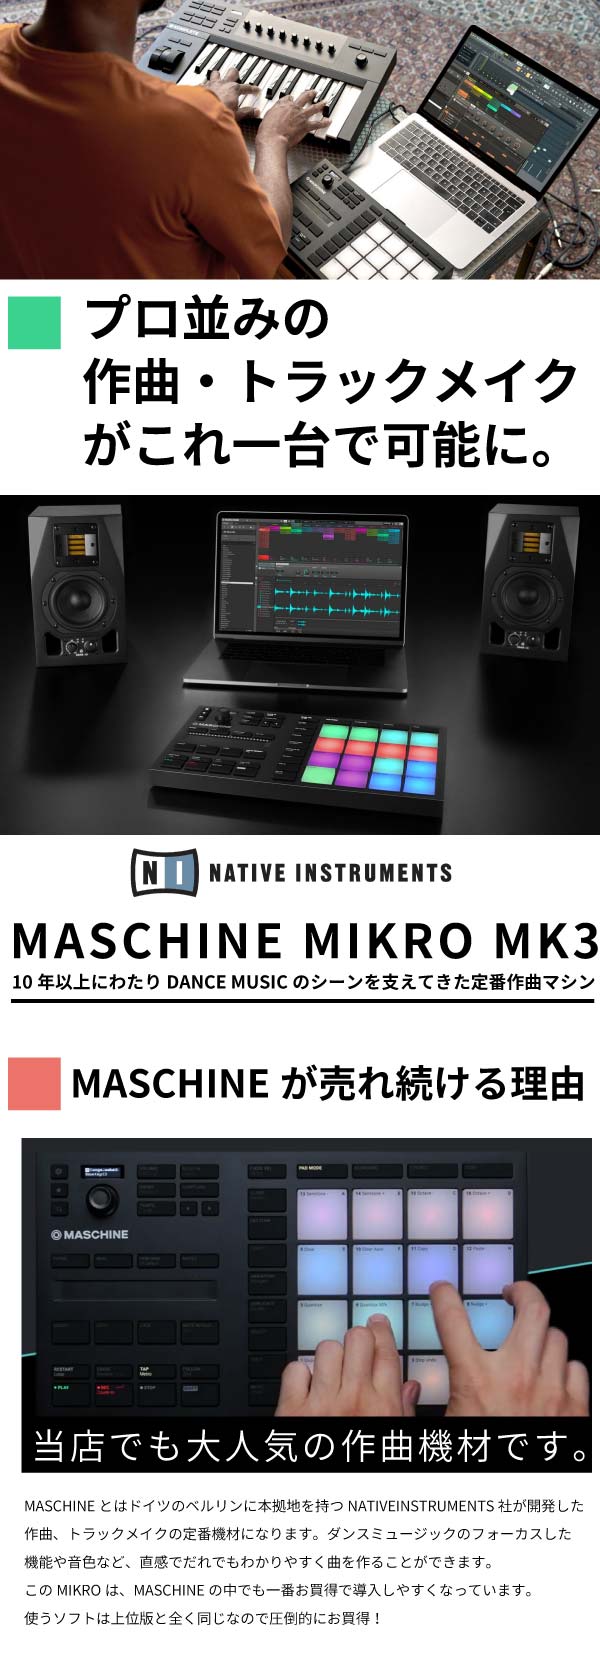 maschine mikro mk3 Native Instruments